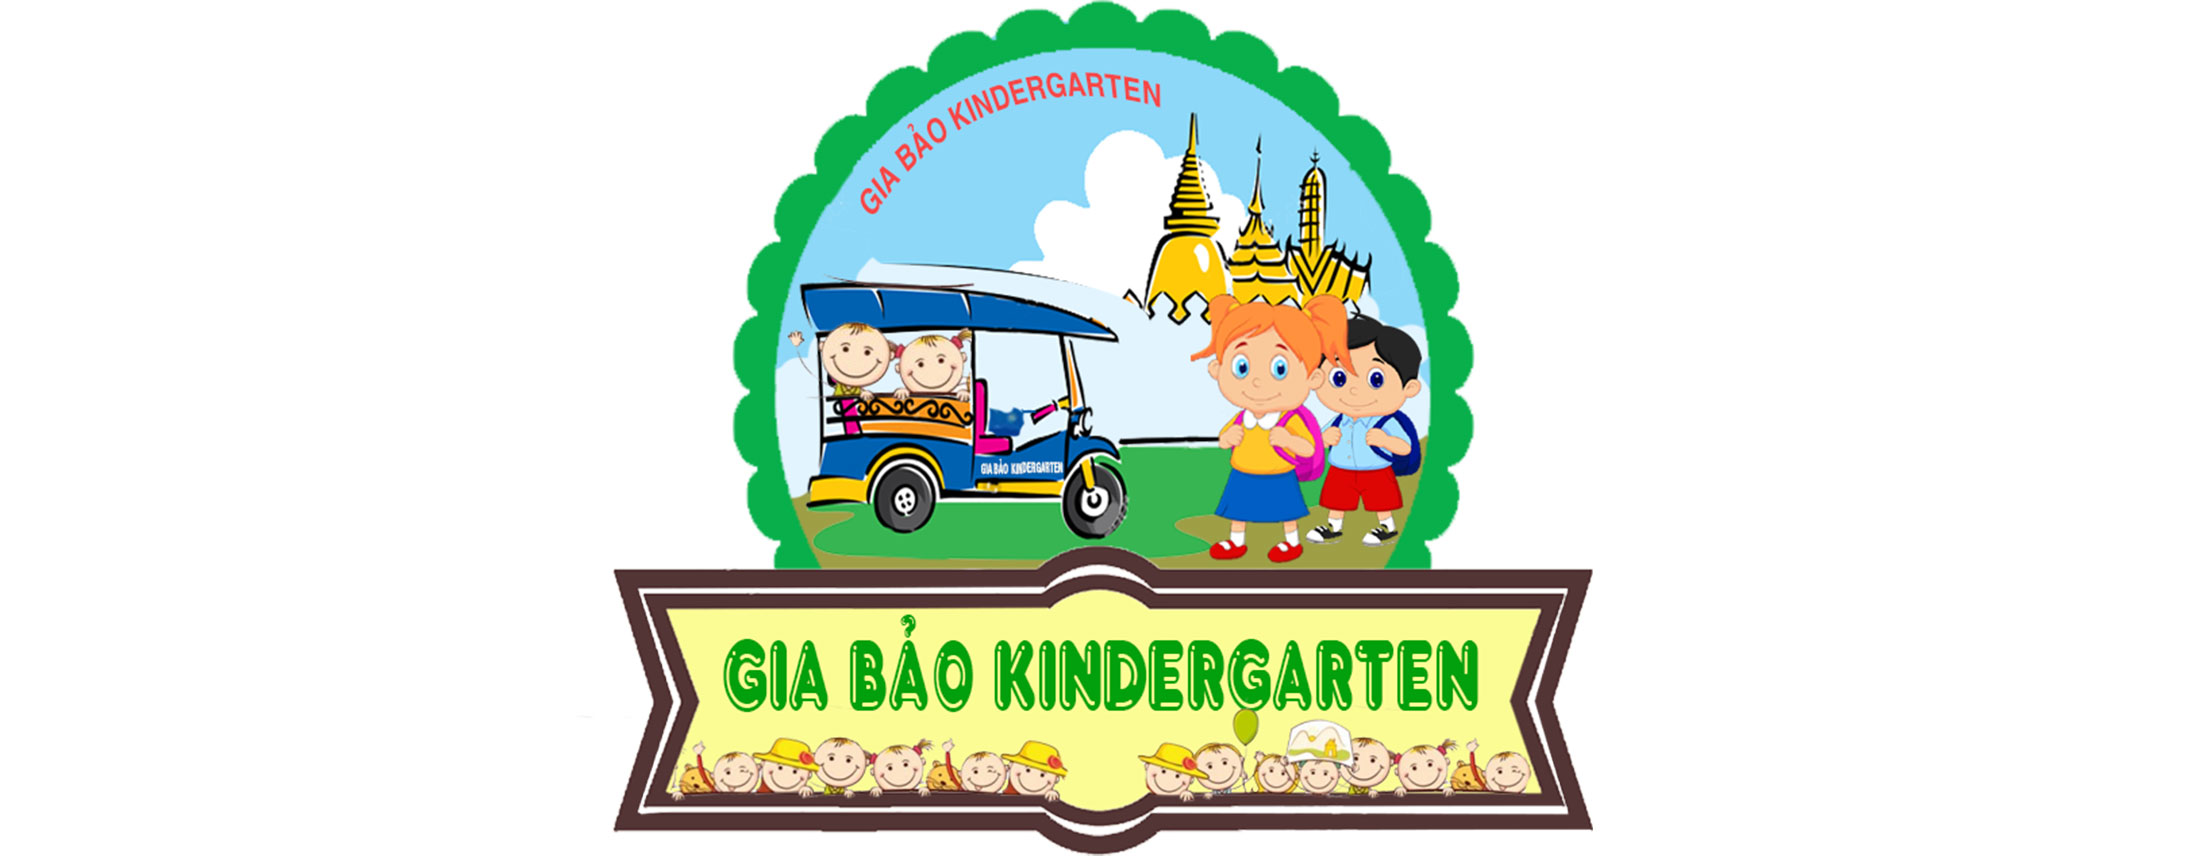 Logo_Gia Bao